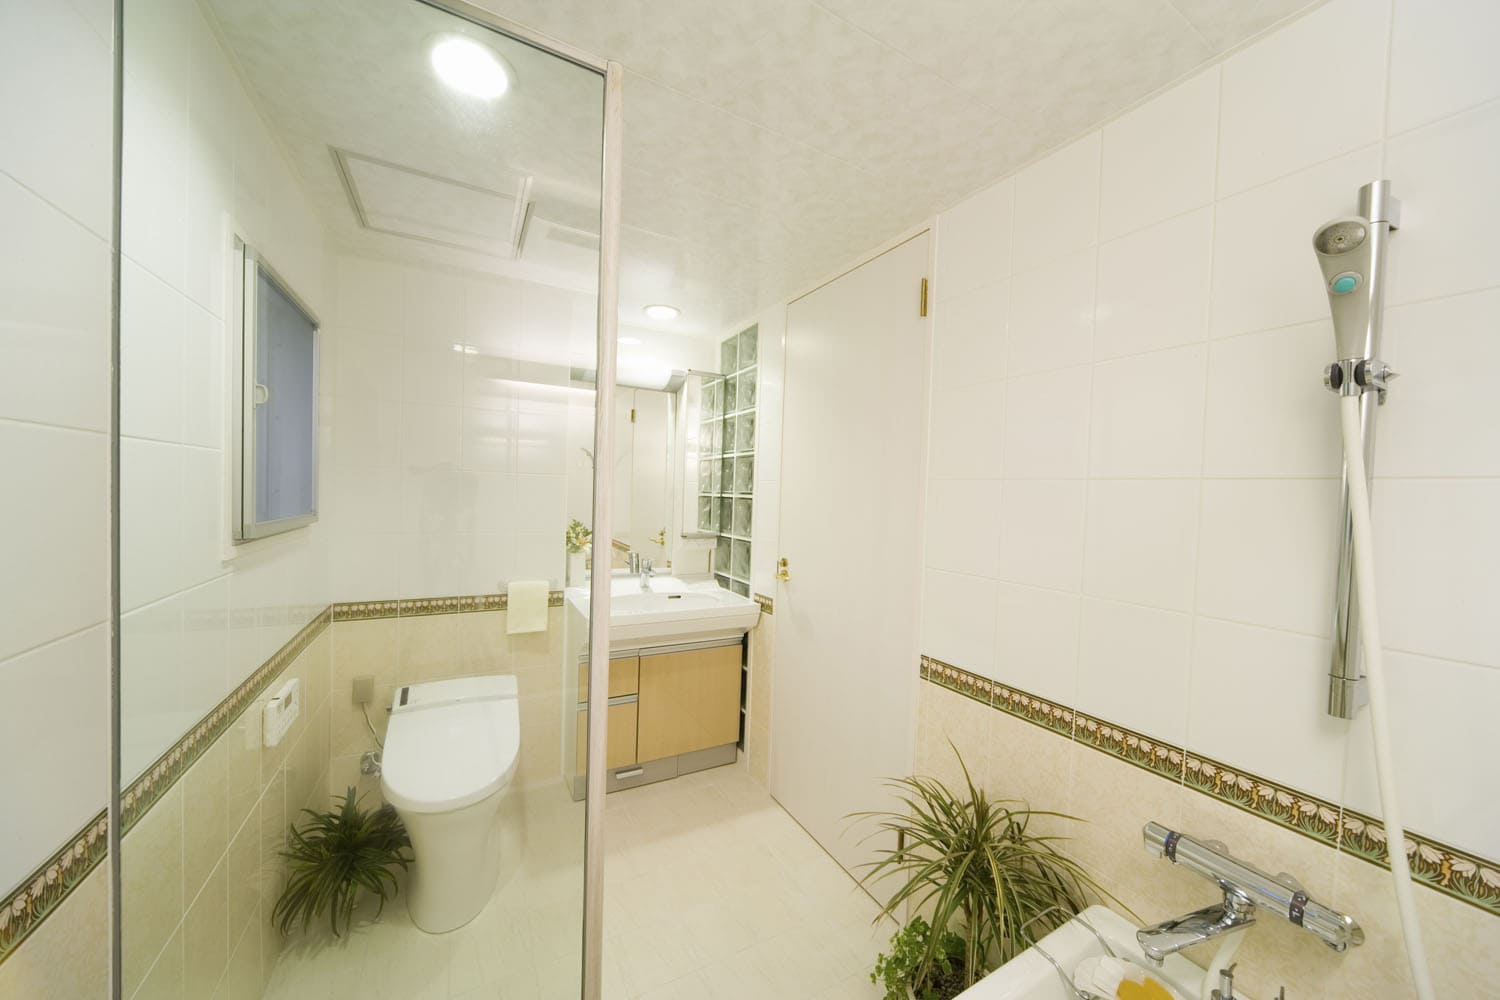 ユニットバス洗面を強化ガラスで仕切り 視覚的な一体感のある空間リフォーム 風呂 浴室施工事例 リフォームならｂｘゆとりフォーム